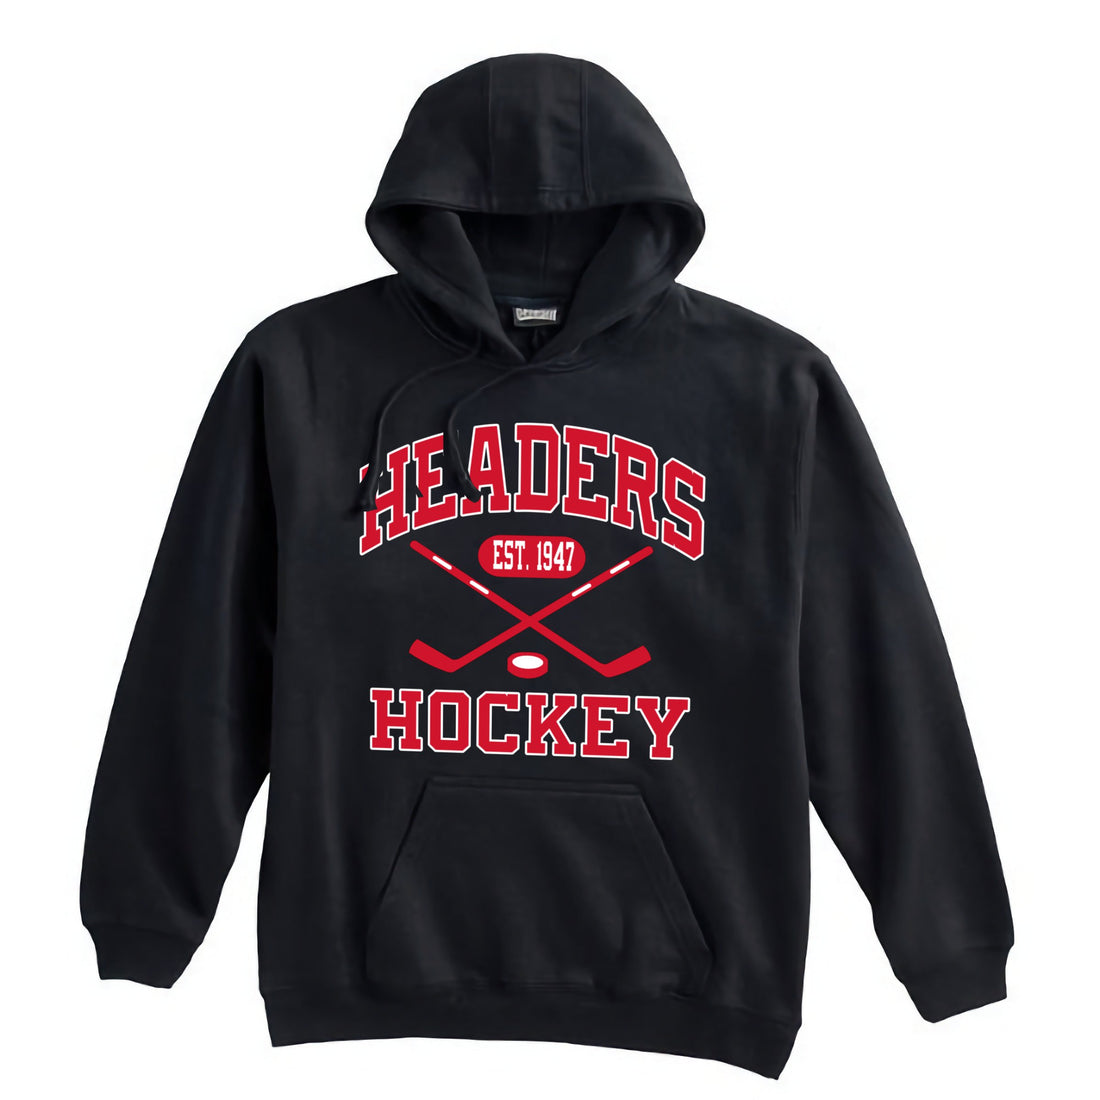 MHS Hockey Premium Hoodie